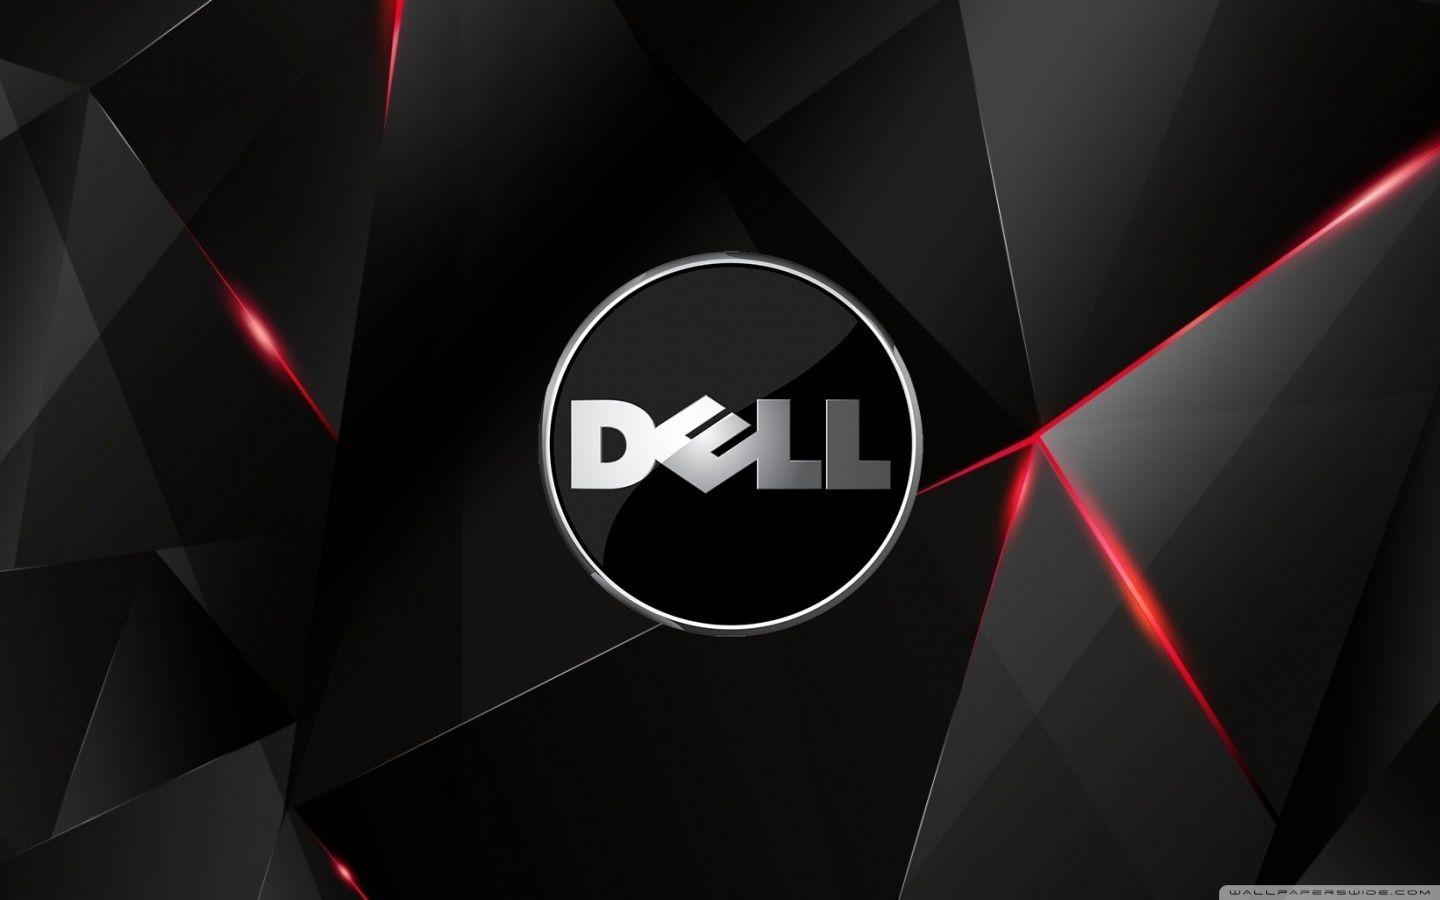 Dell ❤ 4K HD Desktop Wallpaper for 4K Ultra HD TV • Wide & Ultra